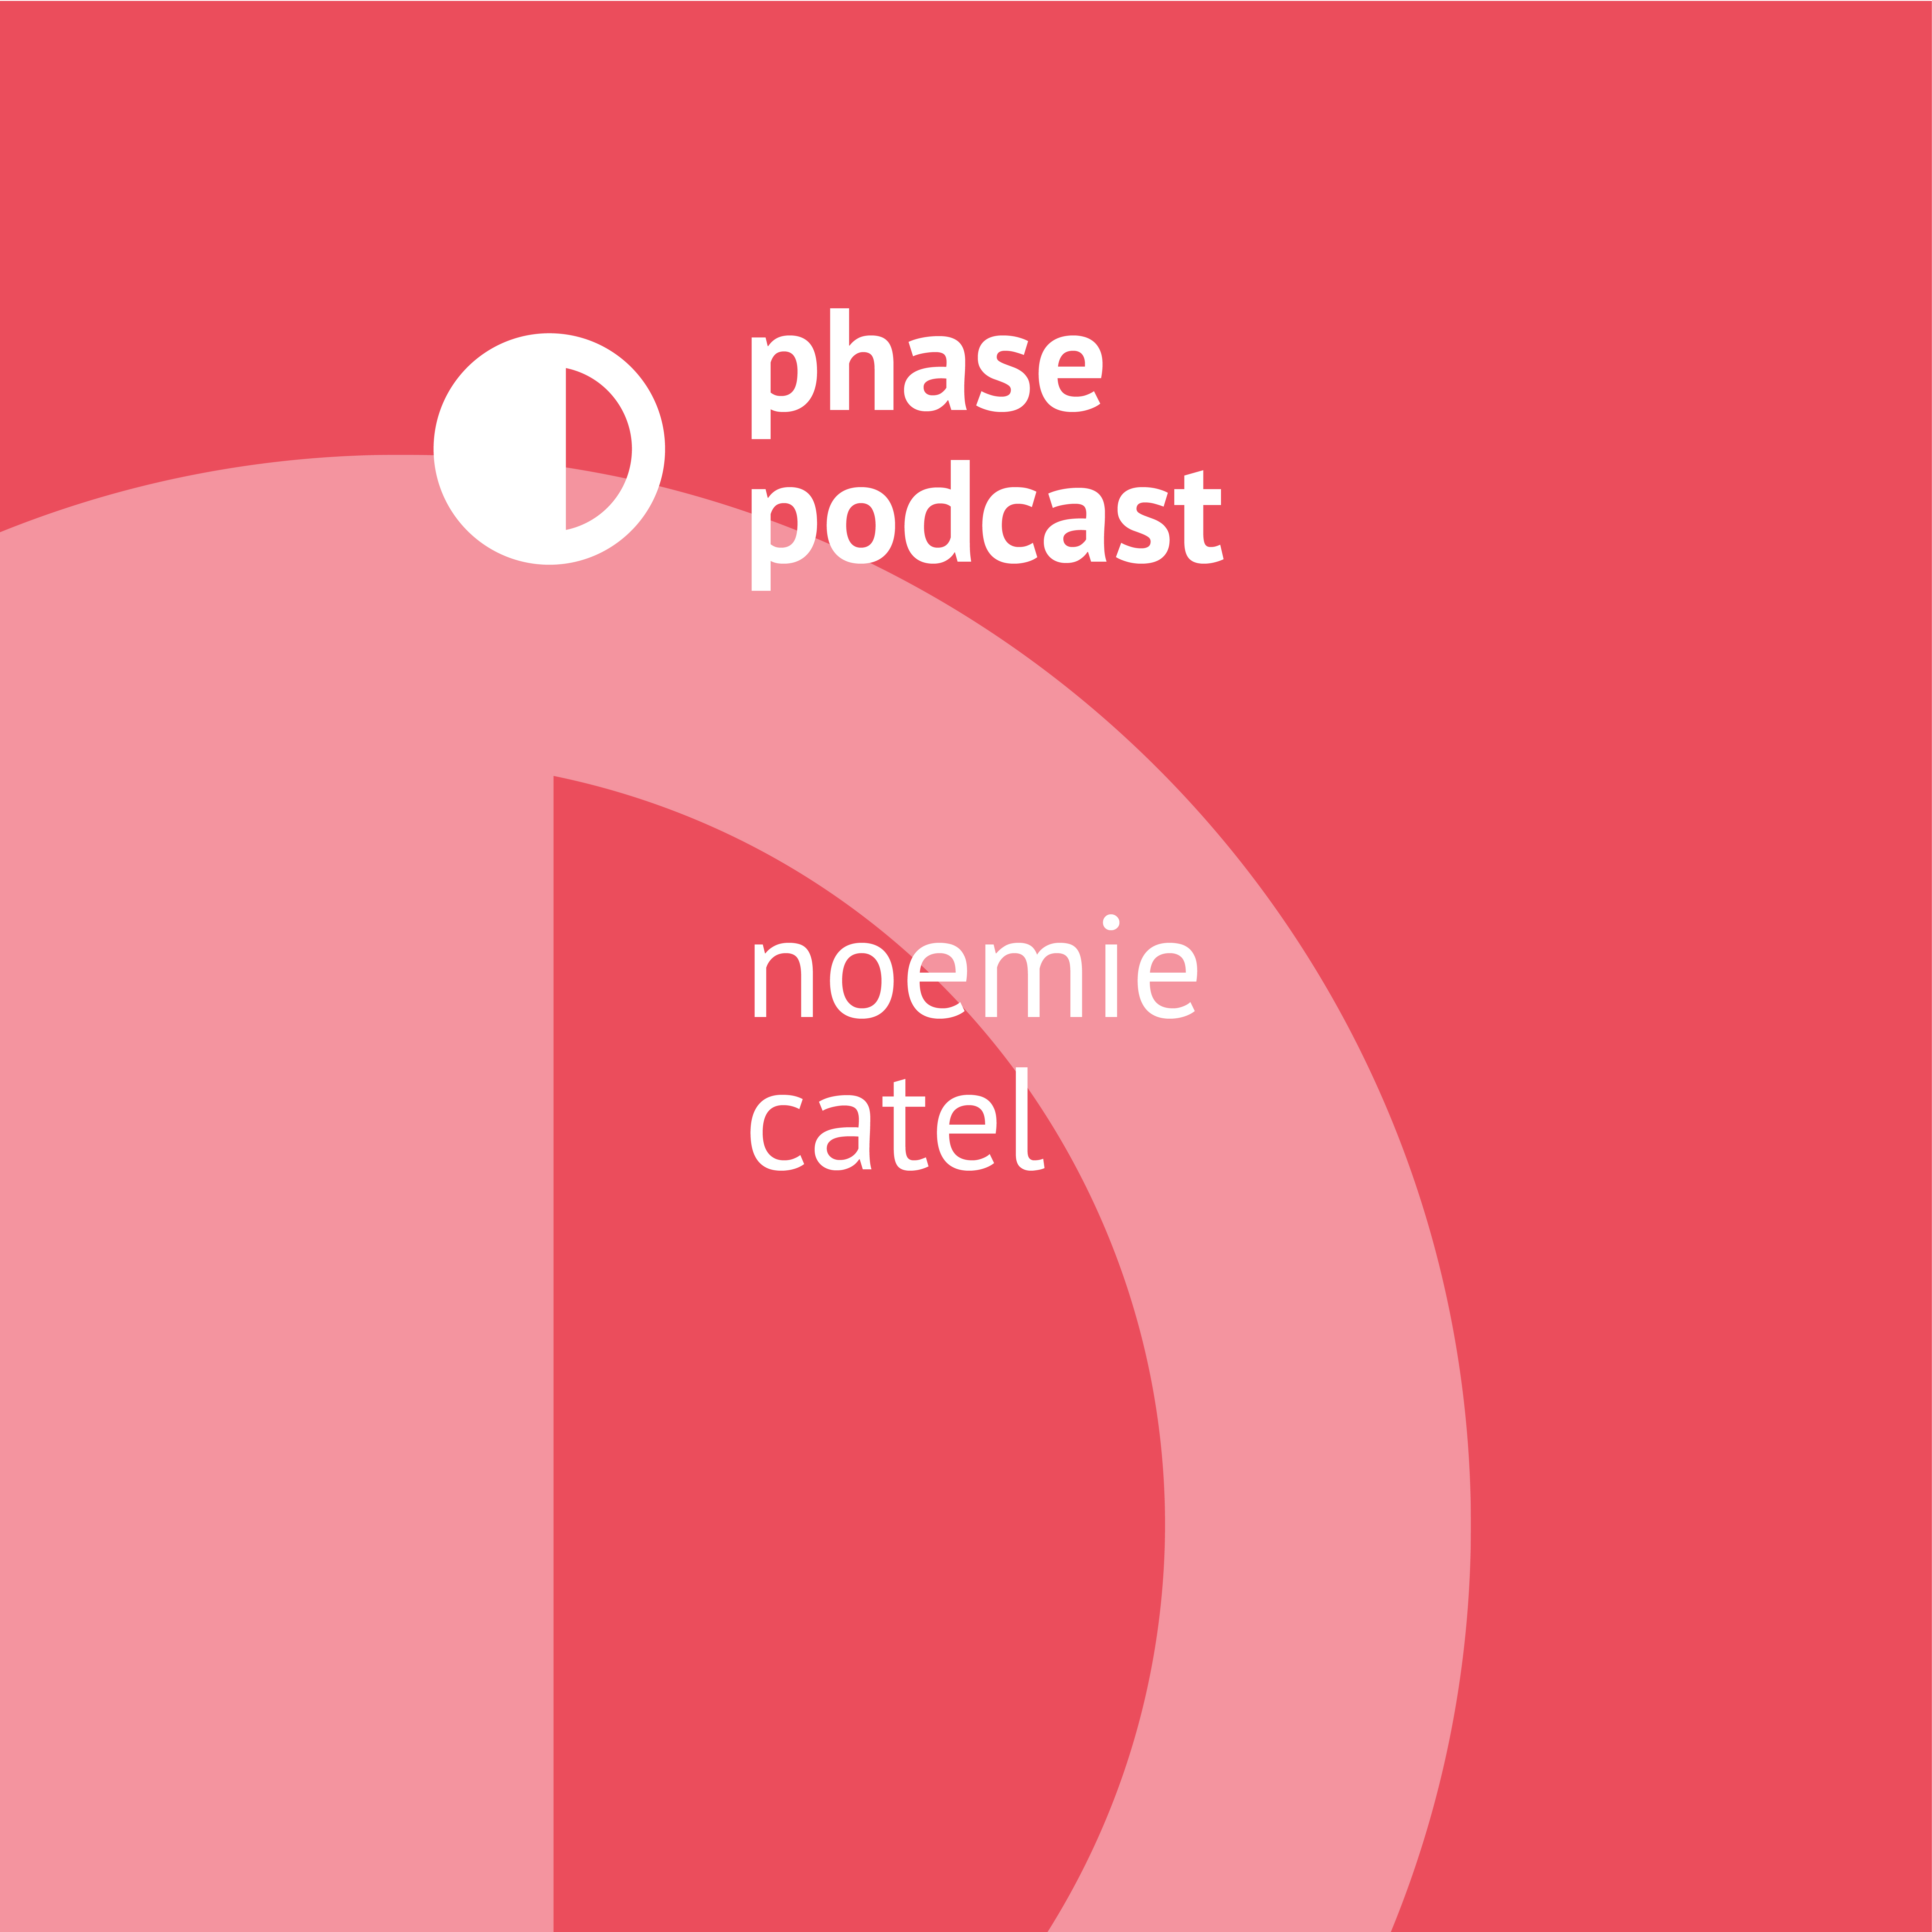 Phase Podcast: Noemie Catel